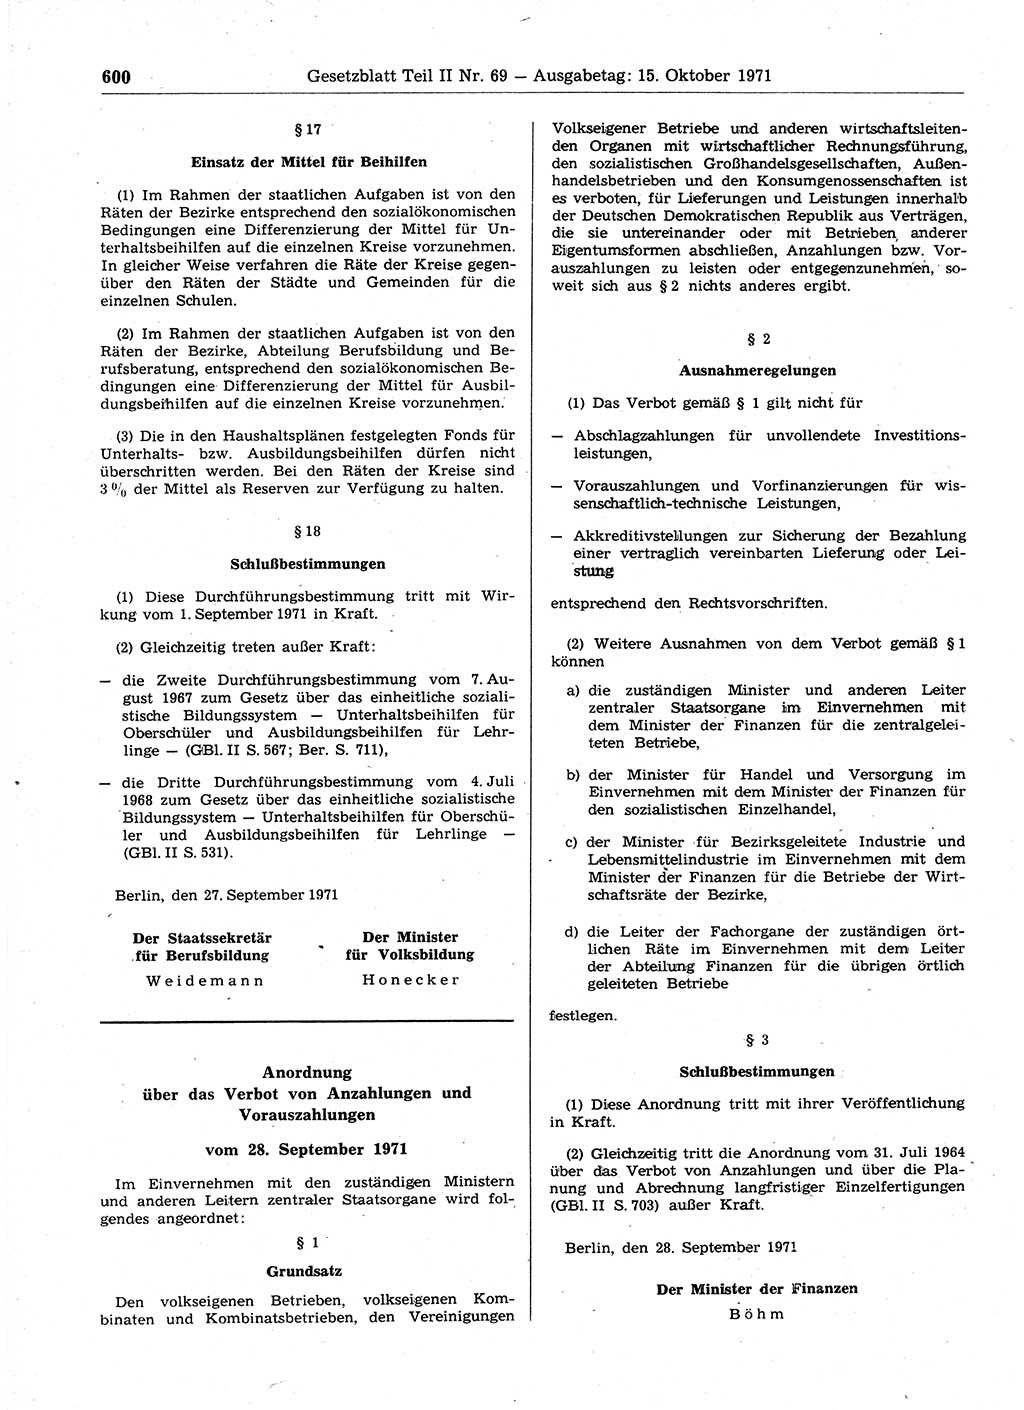 Gesetzblatt (GBl.) der Deutschen Demokratischen Republik (DDR) Teil ⅠⅠ 1971, Seite 600 (GBl. DDR ⅠⅠ 1971, S. 600)